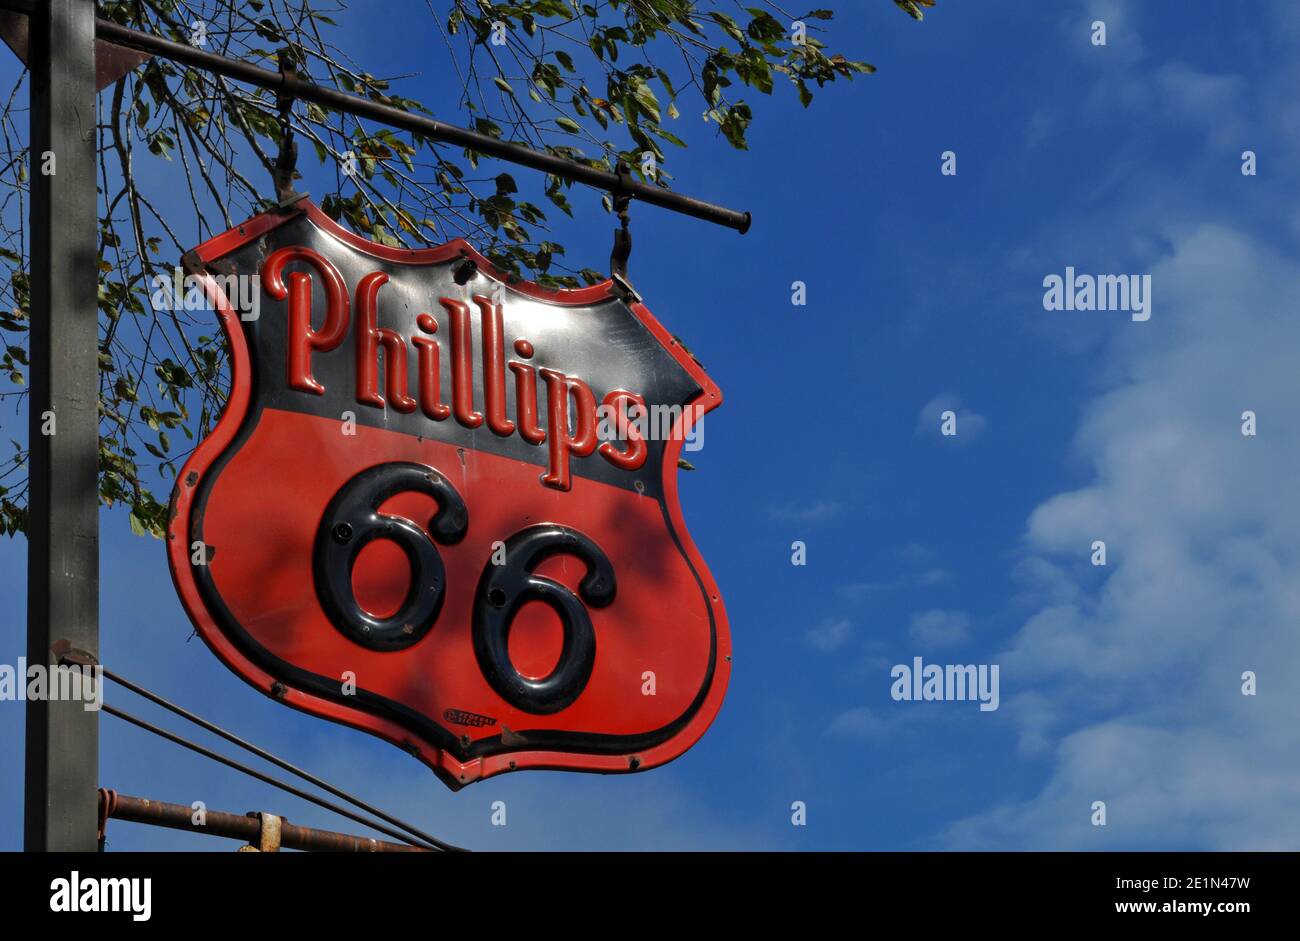 Vicino a Cuba, Missouri, è esposto un antico cartello Phillips 66 a benzina. Foto Stock